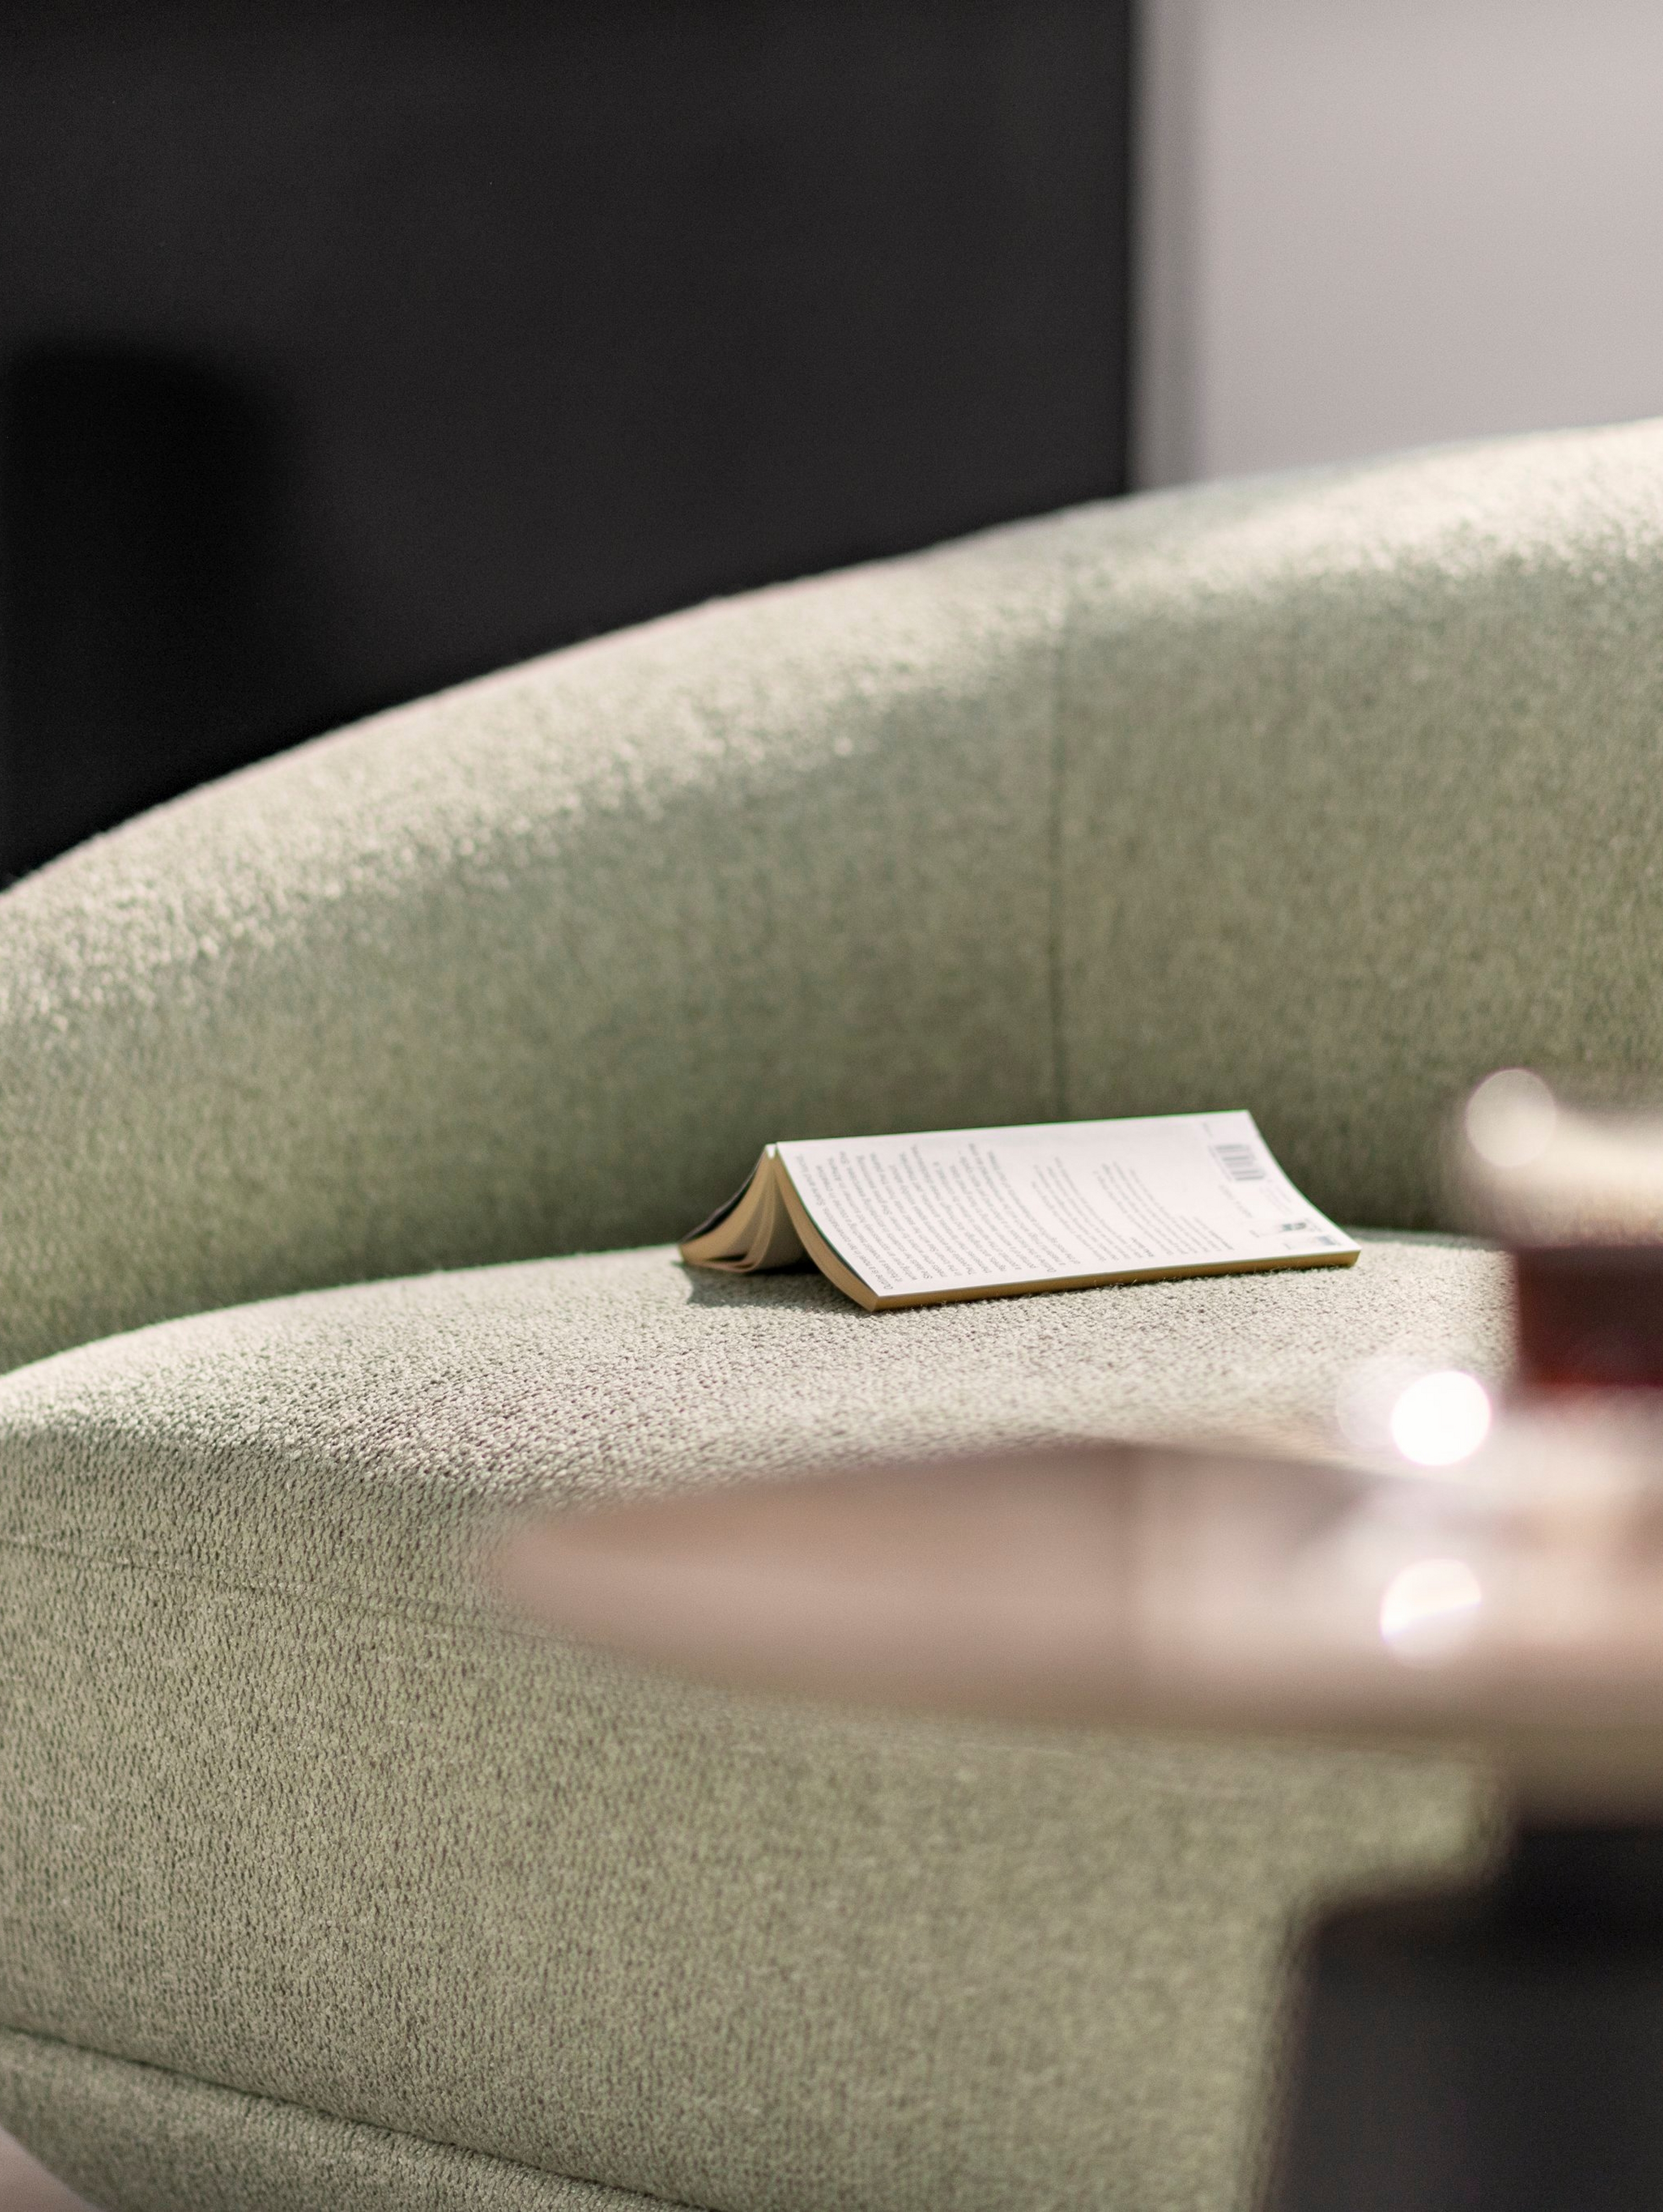 Boek dat rust op de Bolzano chaise longue in licht groene Lazio stof.